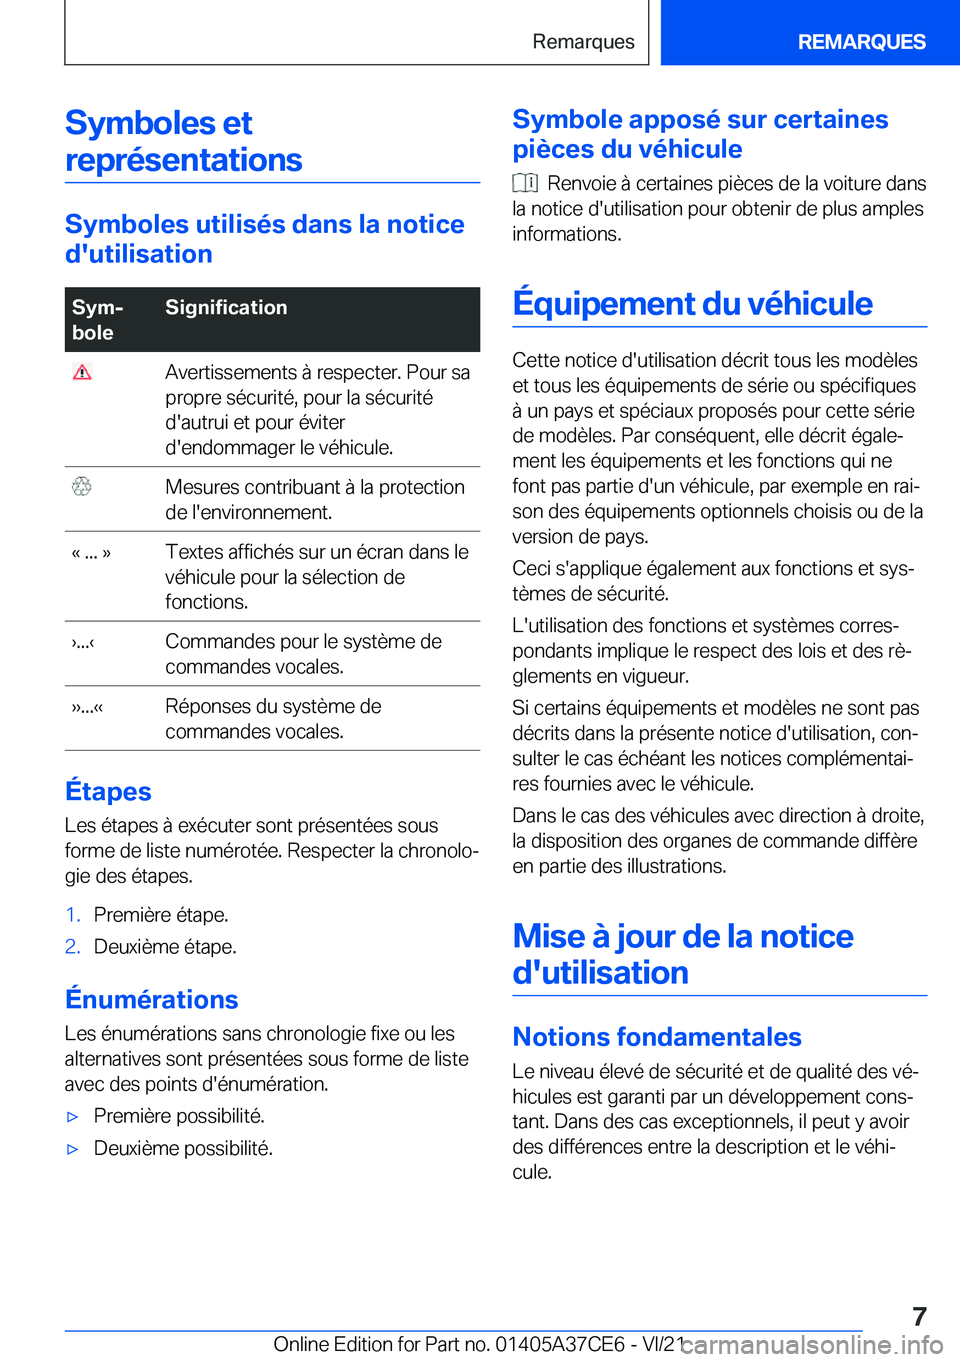 BMW X5 2022  Notices Demploi (in French) �S�y�m�b�o�l�e�s��e�t�r�e�p�r�é�s�e�n�t�a�t�i�o�n�s
�S�y�m�b�o�l�e�s��u�t�i�l�i�s�é�s��d�a�n�s��l�a��n�o�t�i�c�e
�d�'�u�t�i�l�i�s�a�t�i�o�n
�S�y�mj
�b�o�l�e�S�i�g�n�i�f�i�c�a�t�i�o�n��A�v